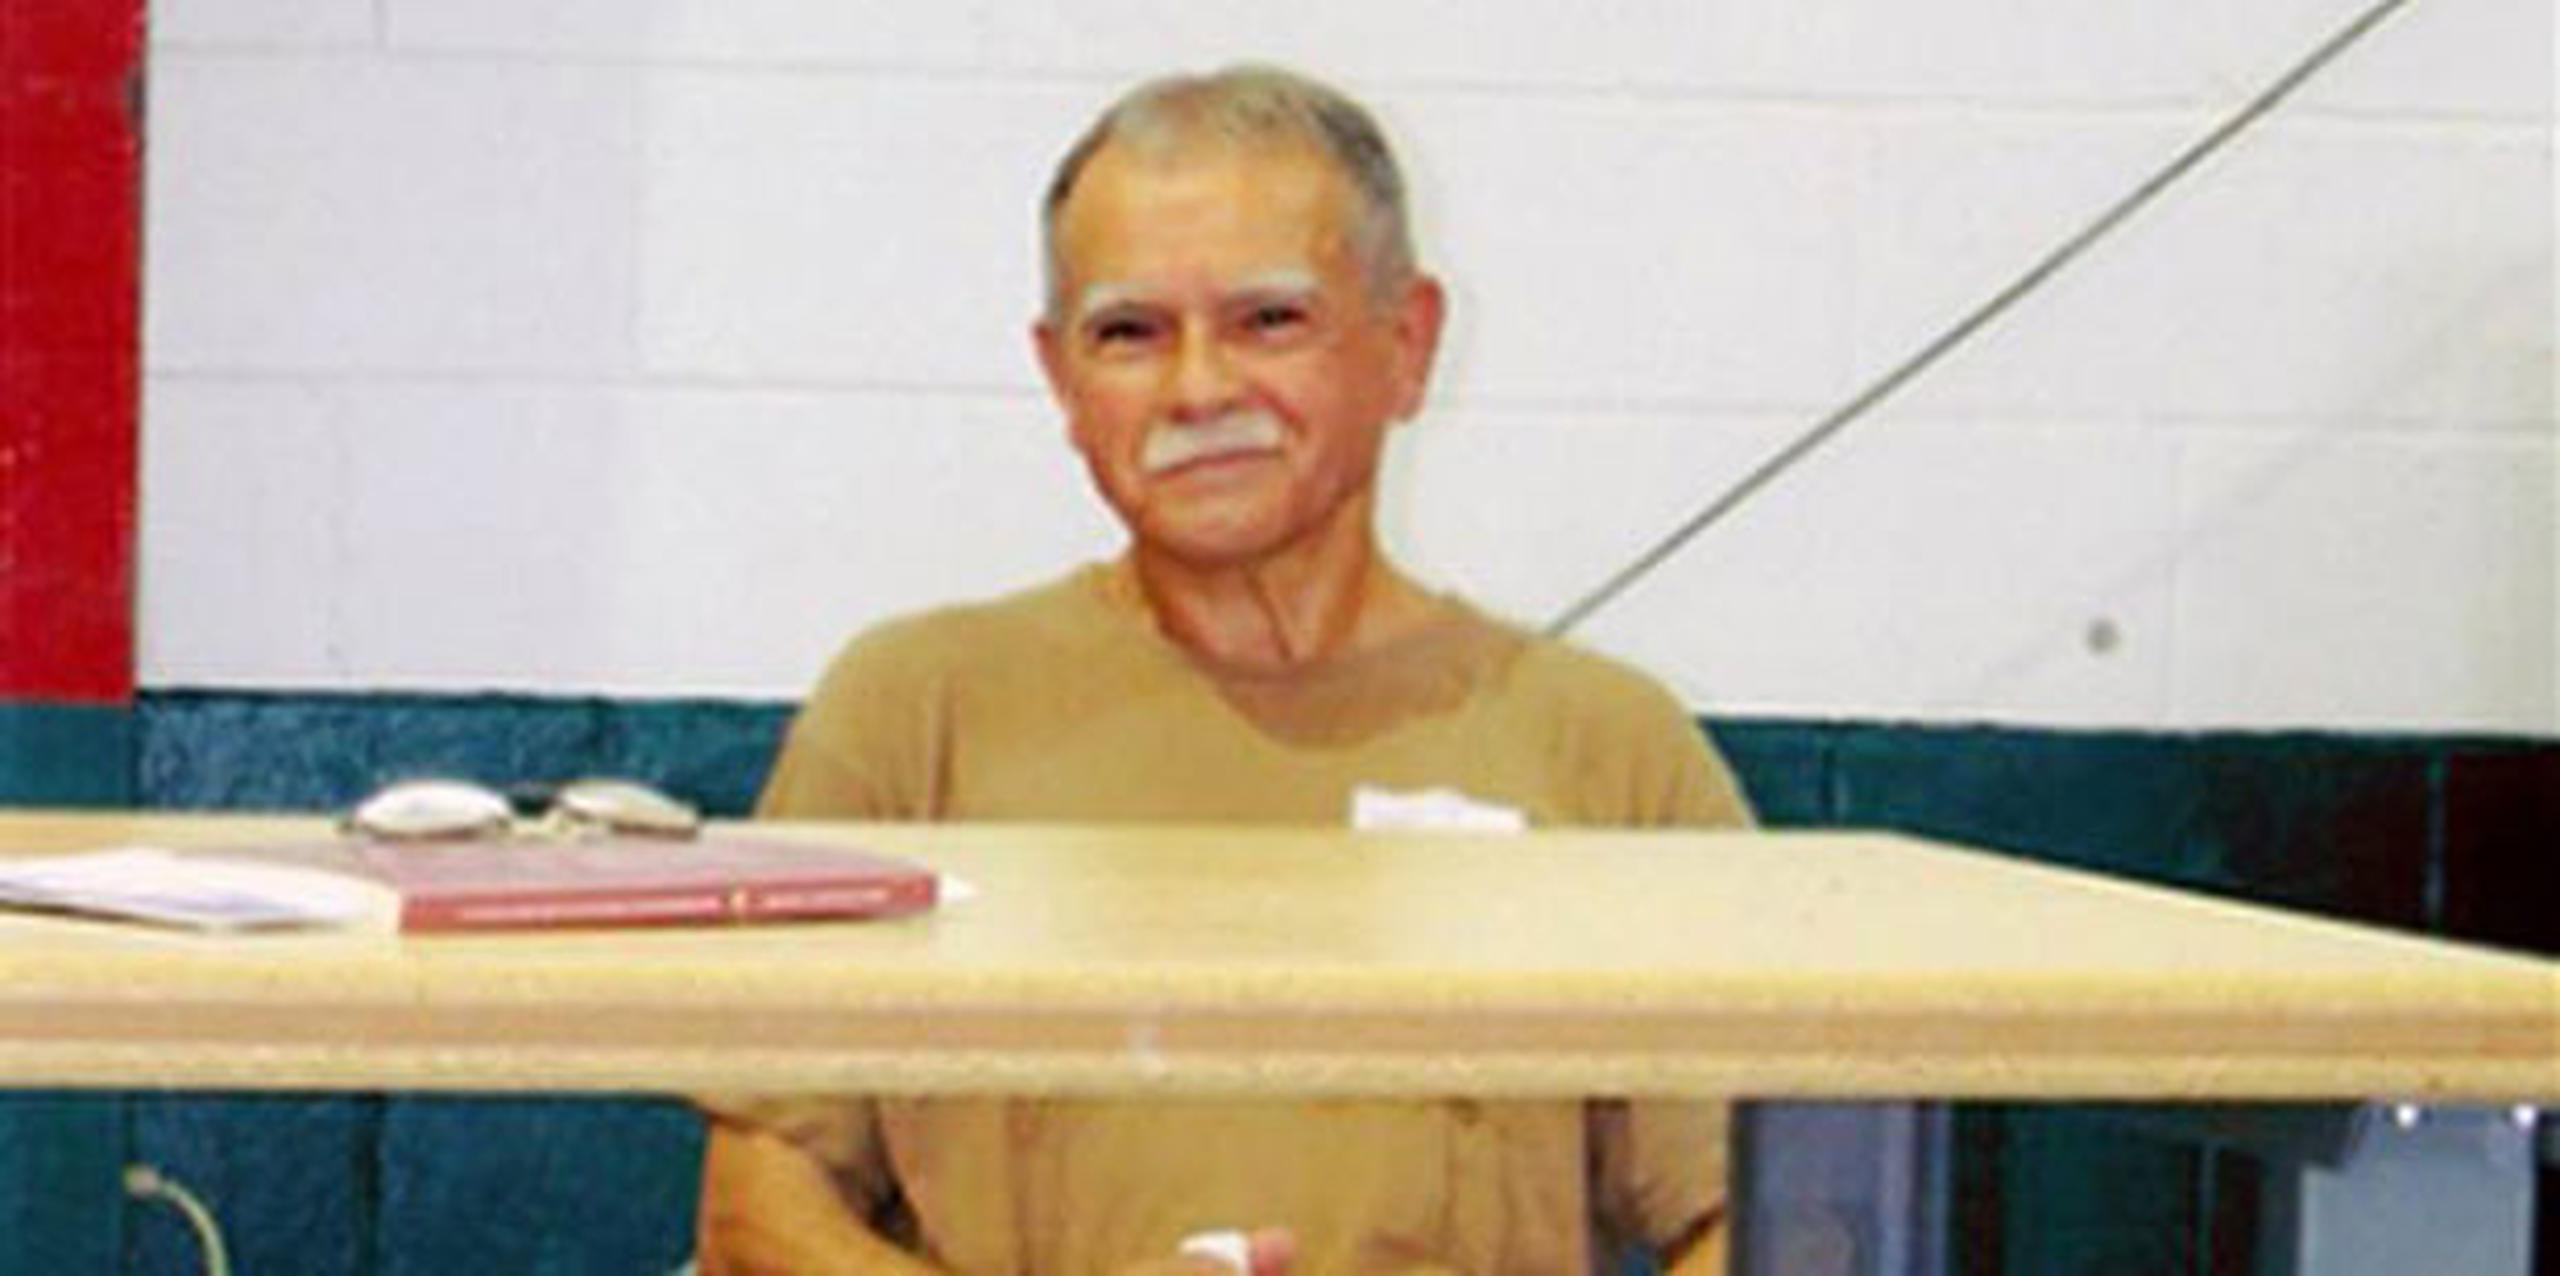 López Rivera, de 72 años de edad, lleva 34 años en prisiones de los EE.UU. tras haber sido encontrado culpable de conspiración sediciosa por su relación con las Fuerzas Armadas de Liberación Nacional (FALN) que luchaba por la libertad de Puerto Rico. (Archivo)